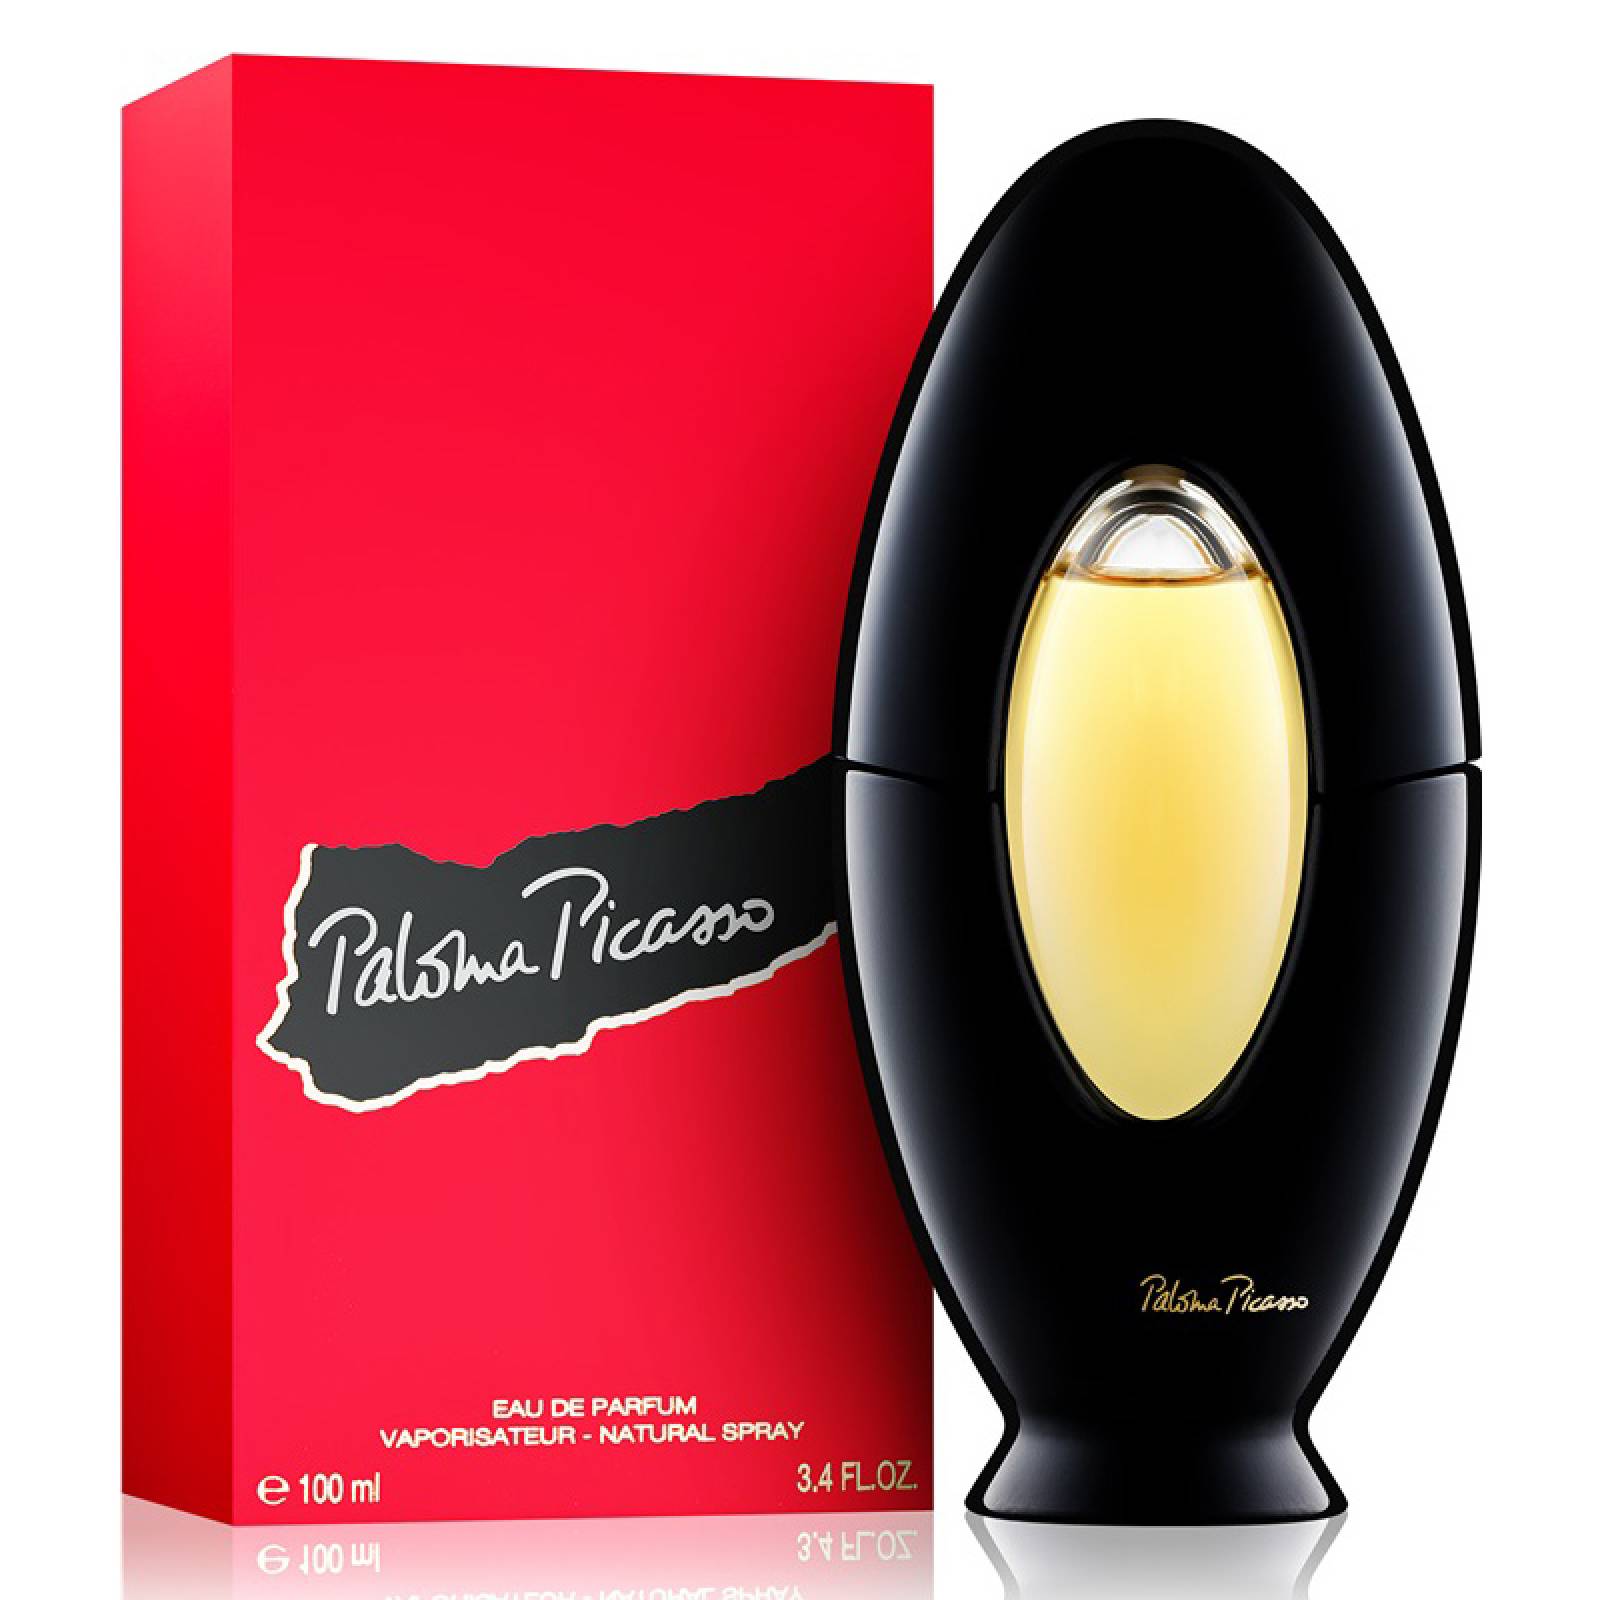 Perfume Paloma Picasso para Mujer Eau de Parfum 100ml